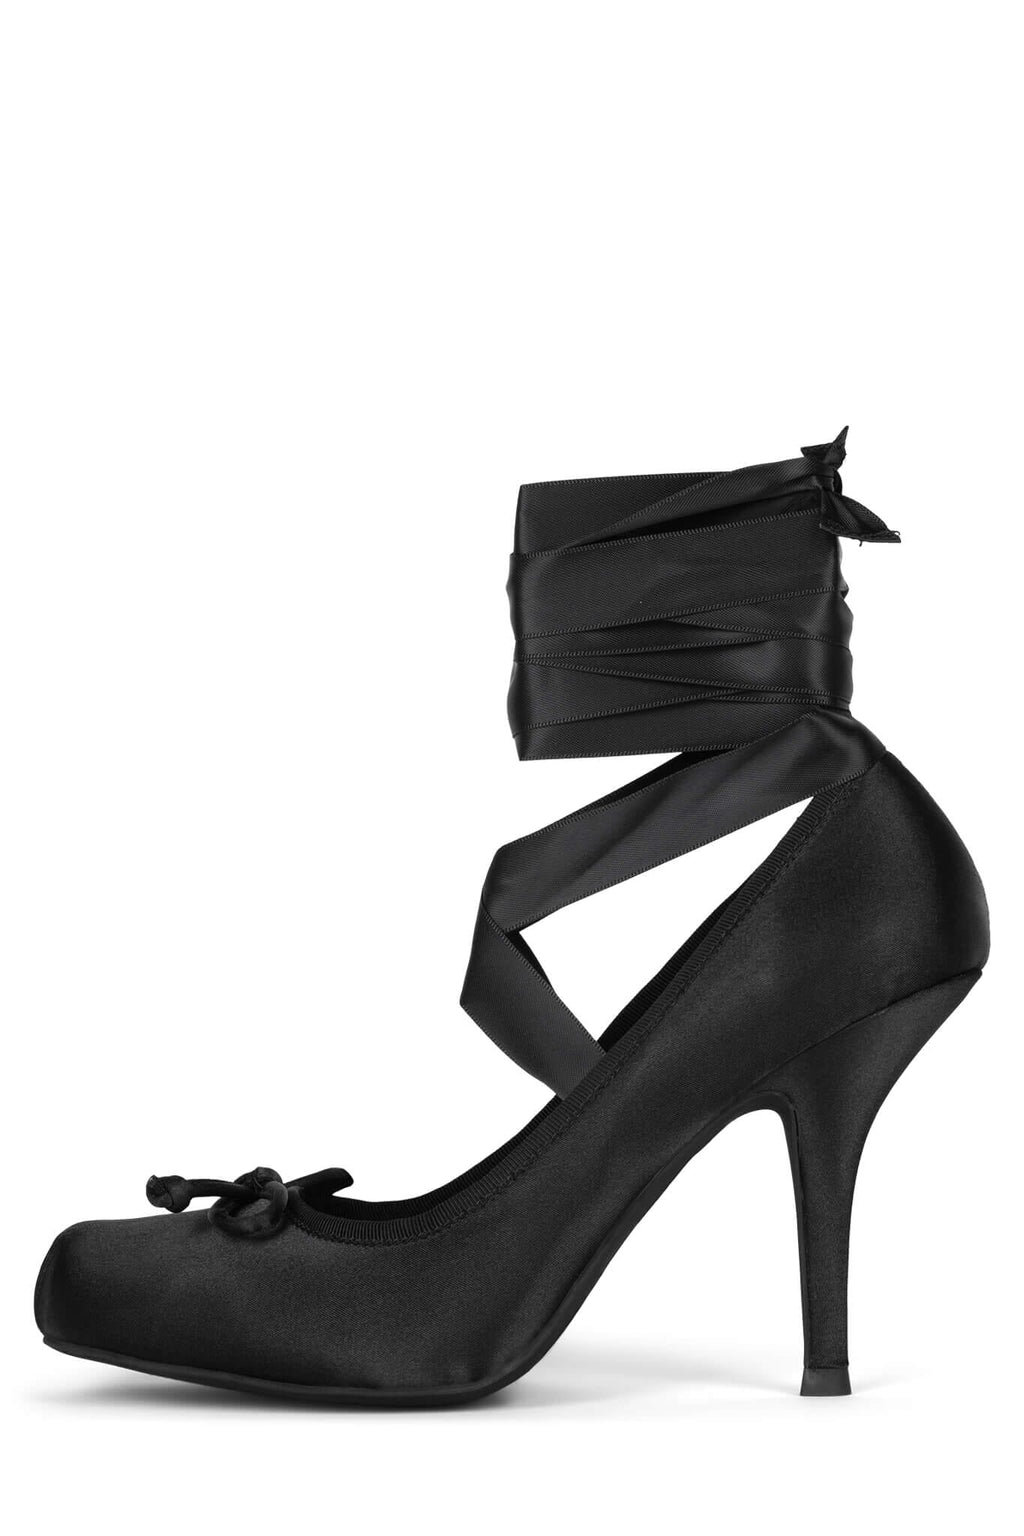 schoe craft Women Black Heels - Buy schoe craft Women Black Heels Online at  Best Price - Shop Online for Footwears in India | Flipkart.com